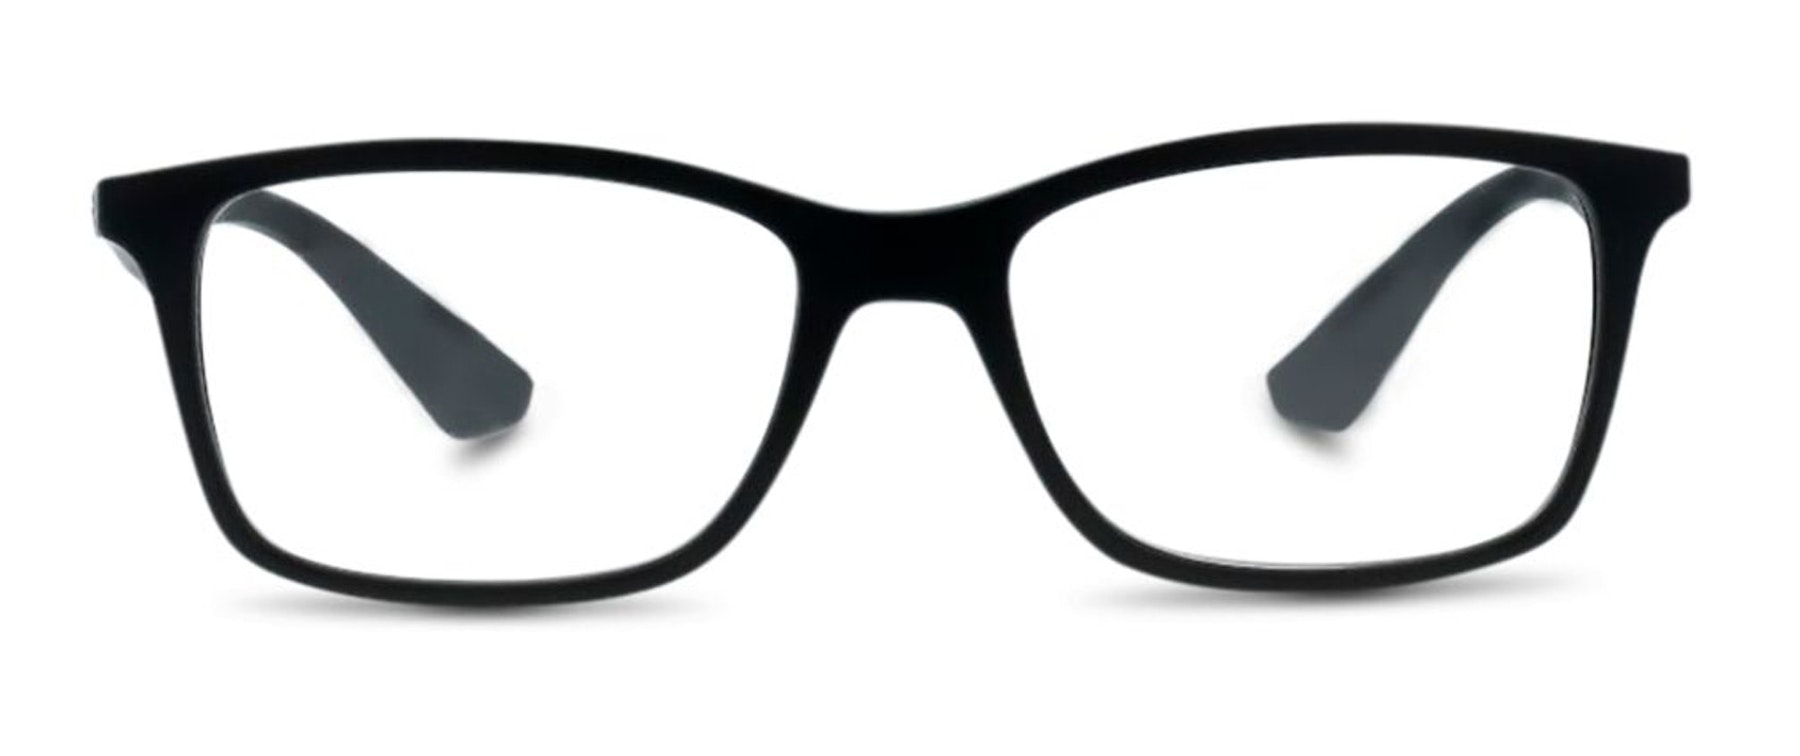 ray ban glasses vision express